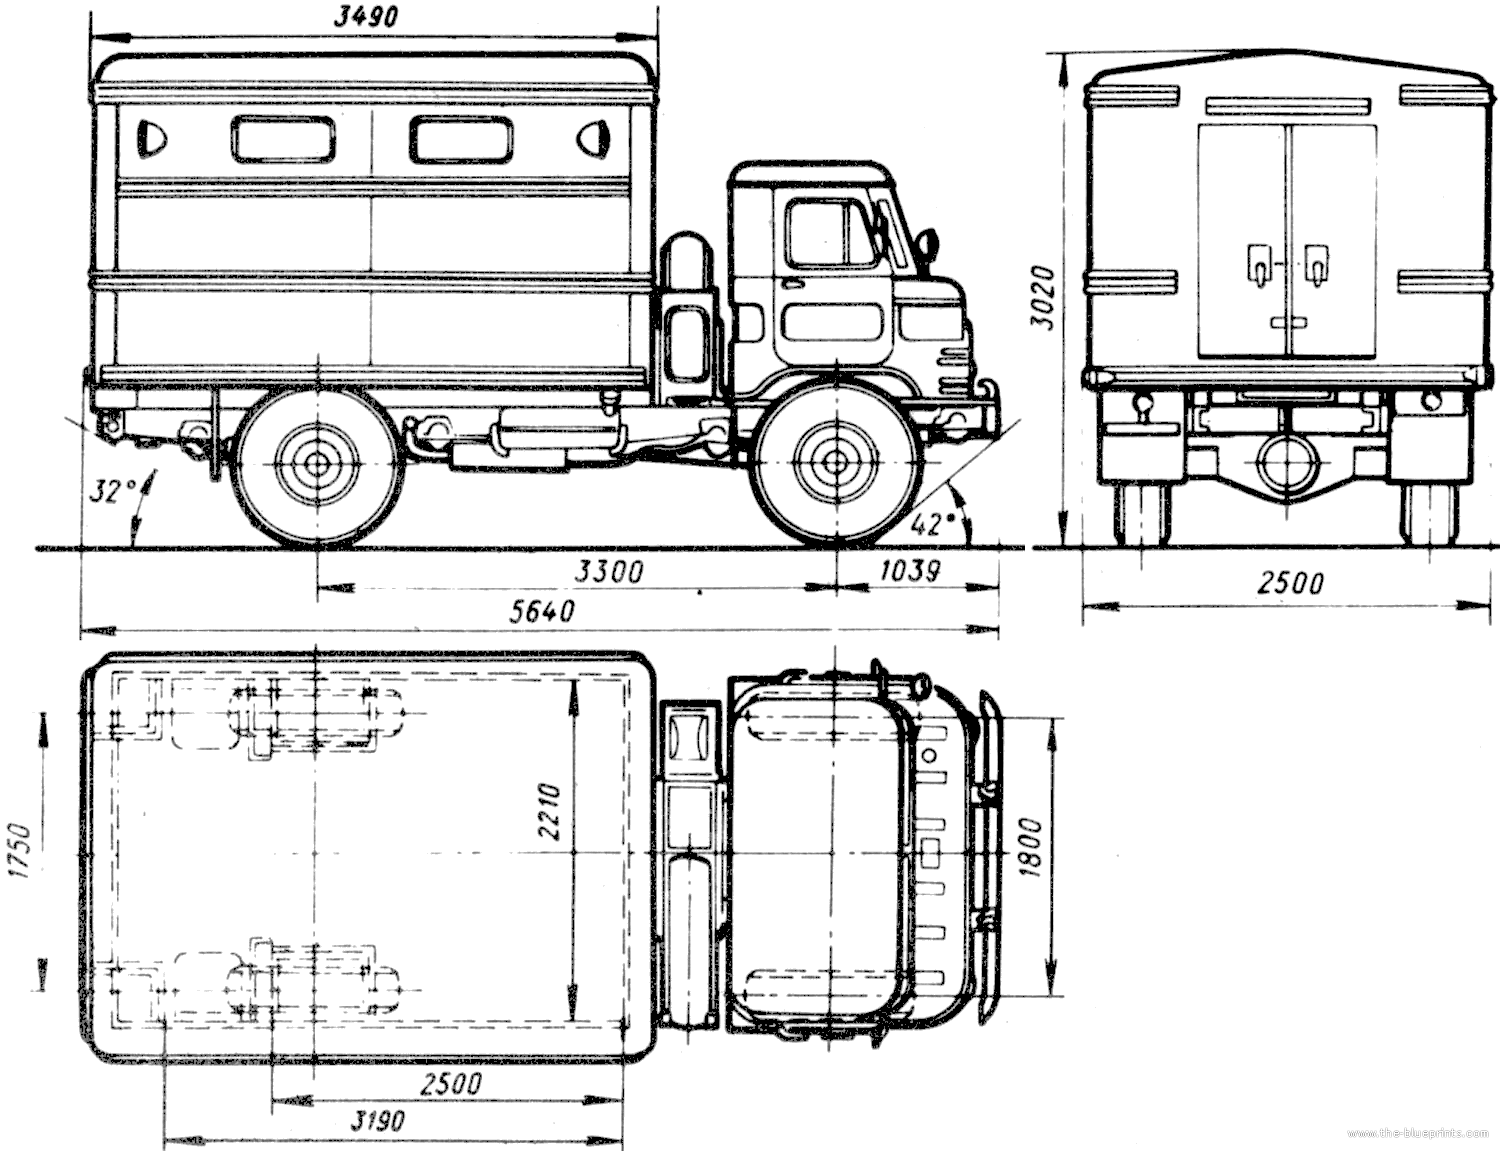 The-Blueprints.com - Blueprints > Trucks > GAZ > GAZ-66-01 GZSA-